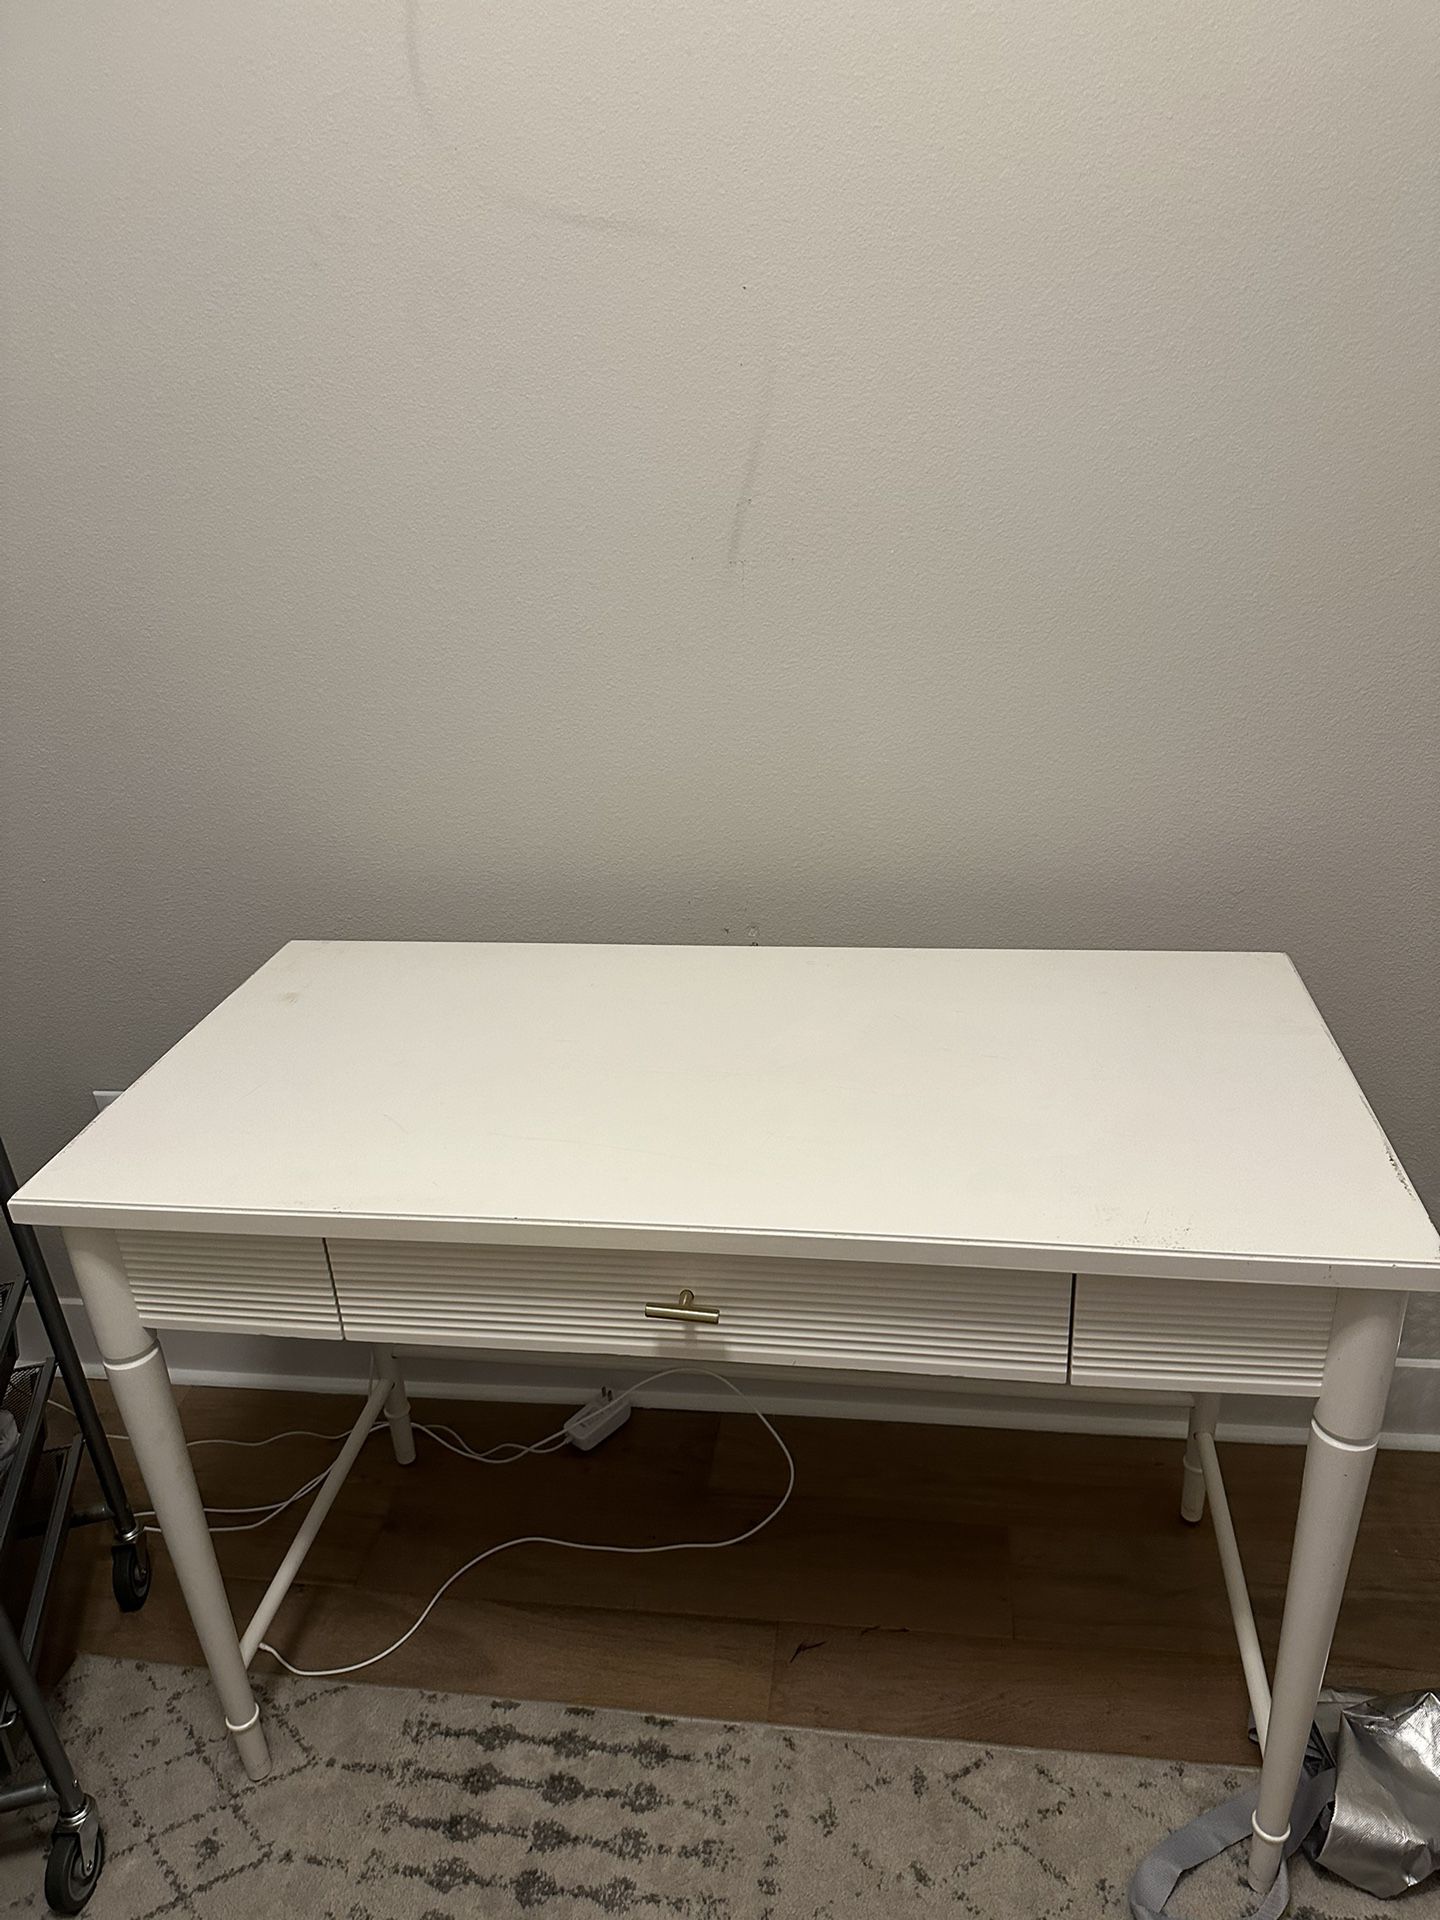  44in W x 21in D x 30.2in H White Desk / Makeup Desk